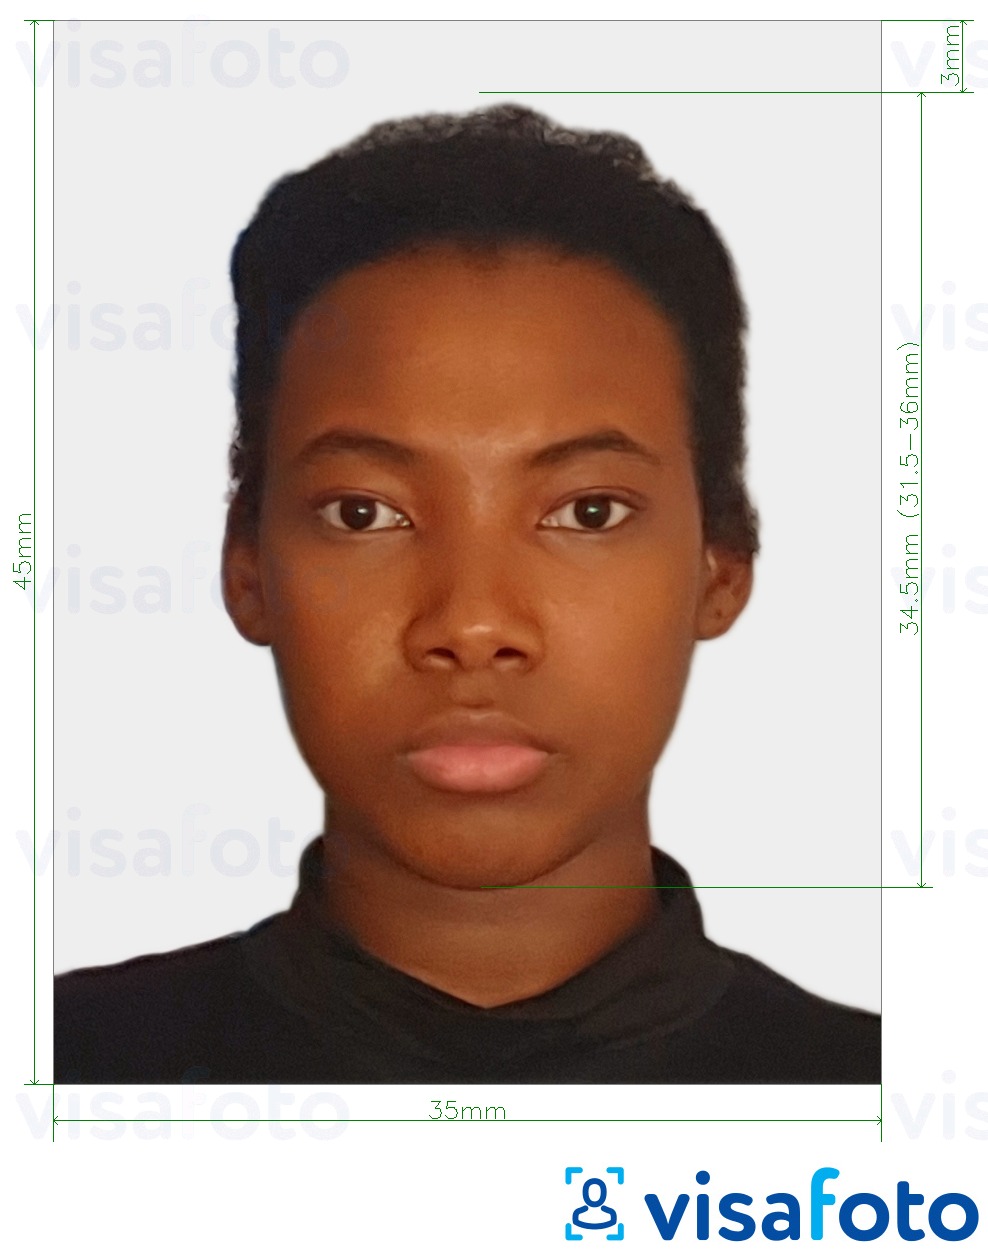 苏里南在线签证 的标准尺寸照片示例